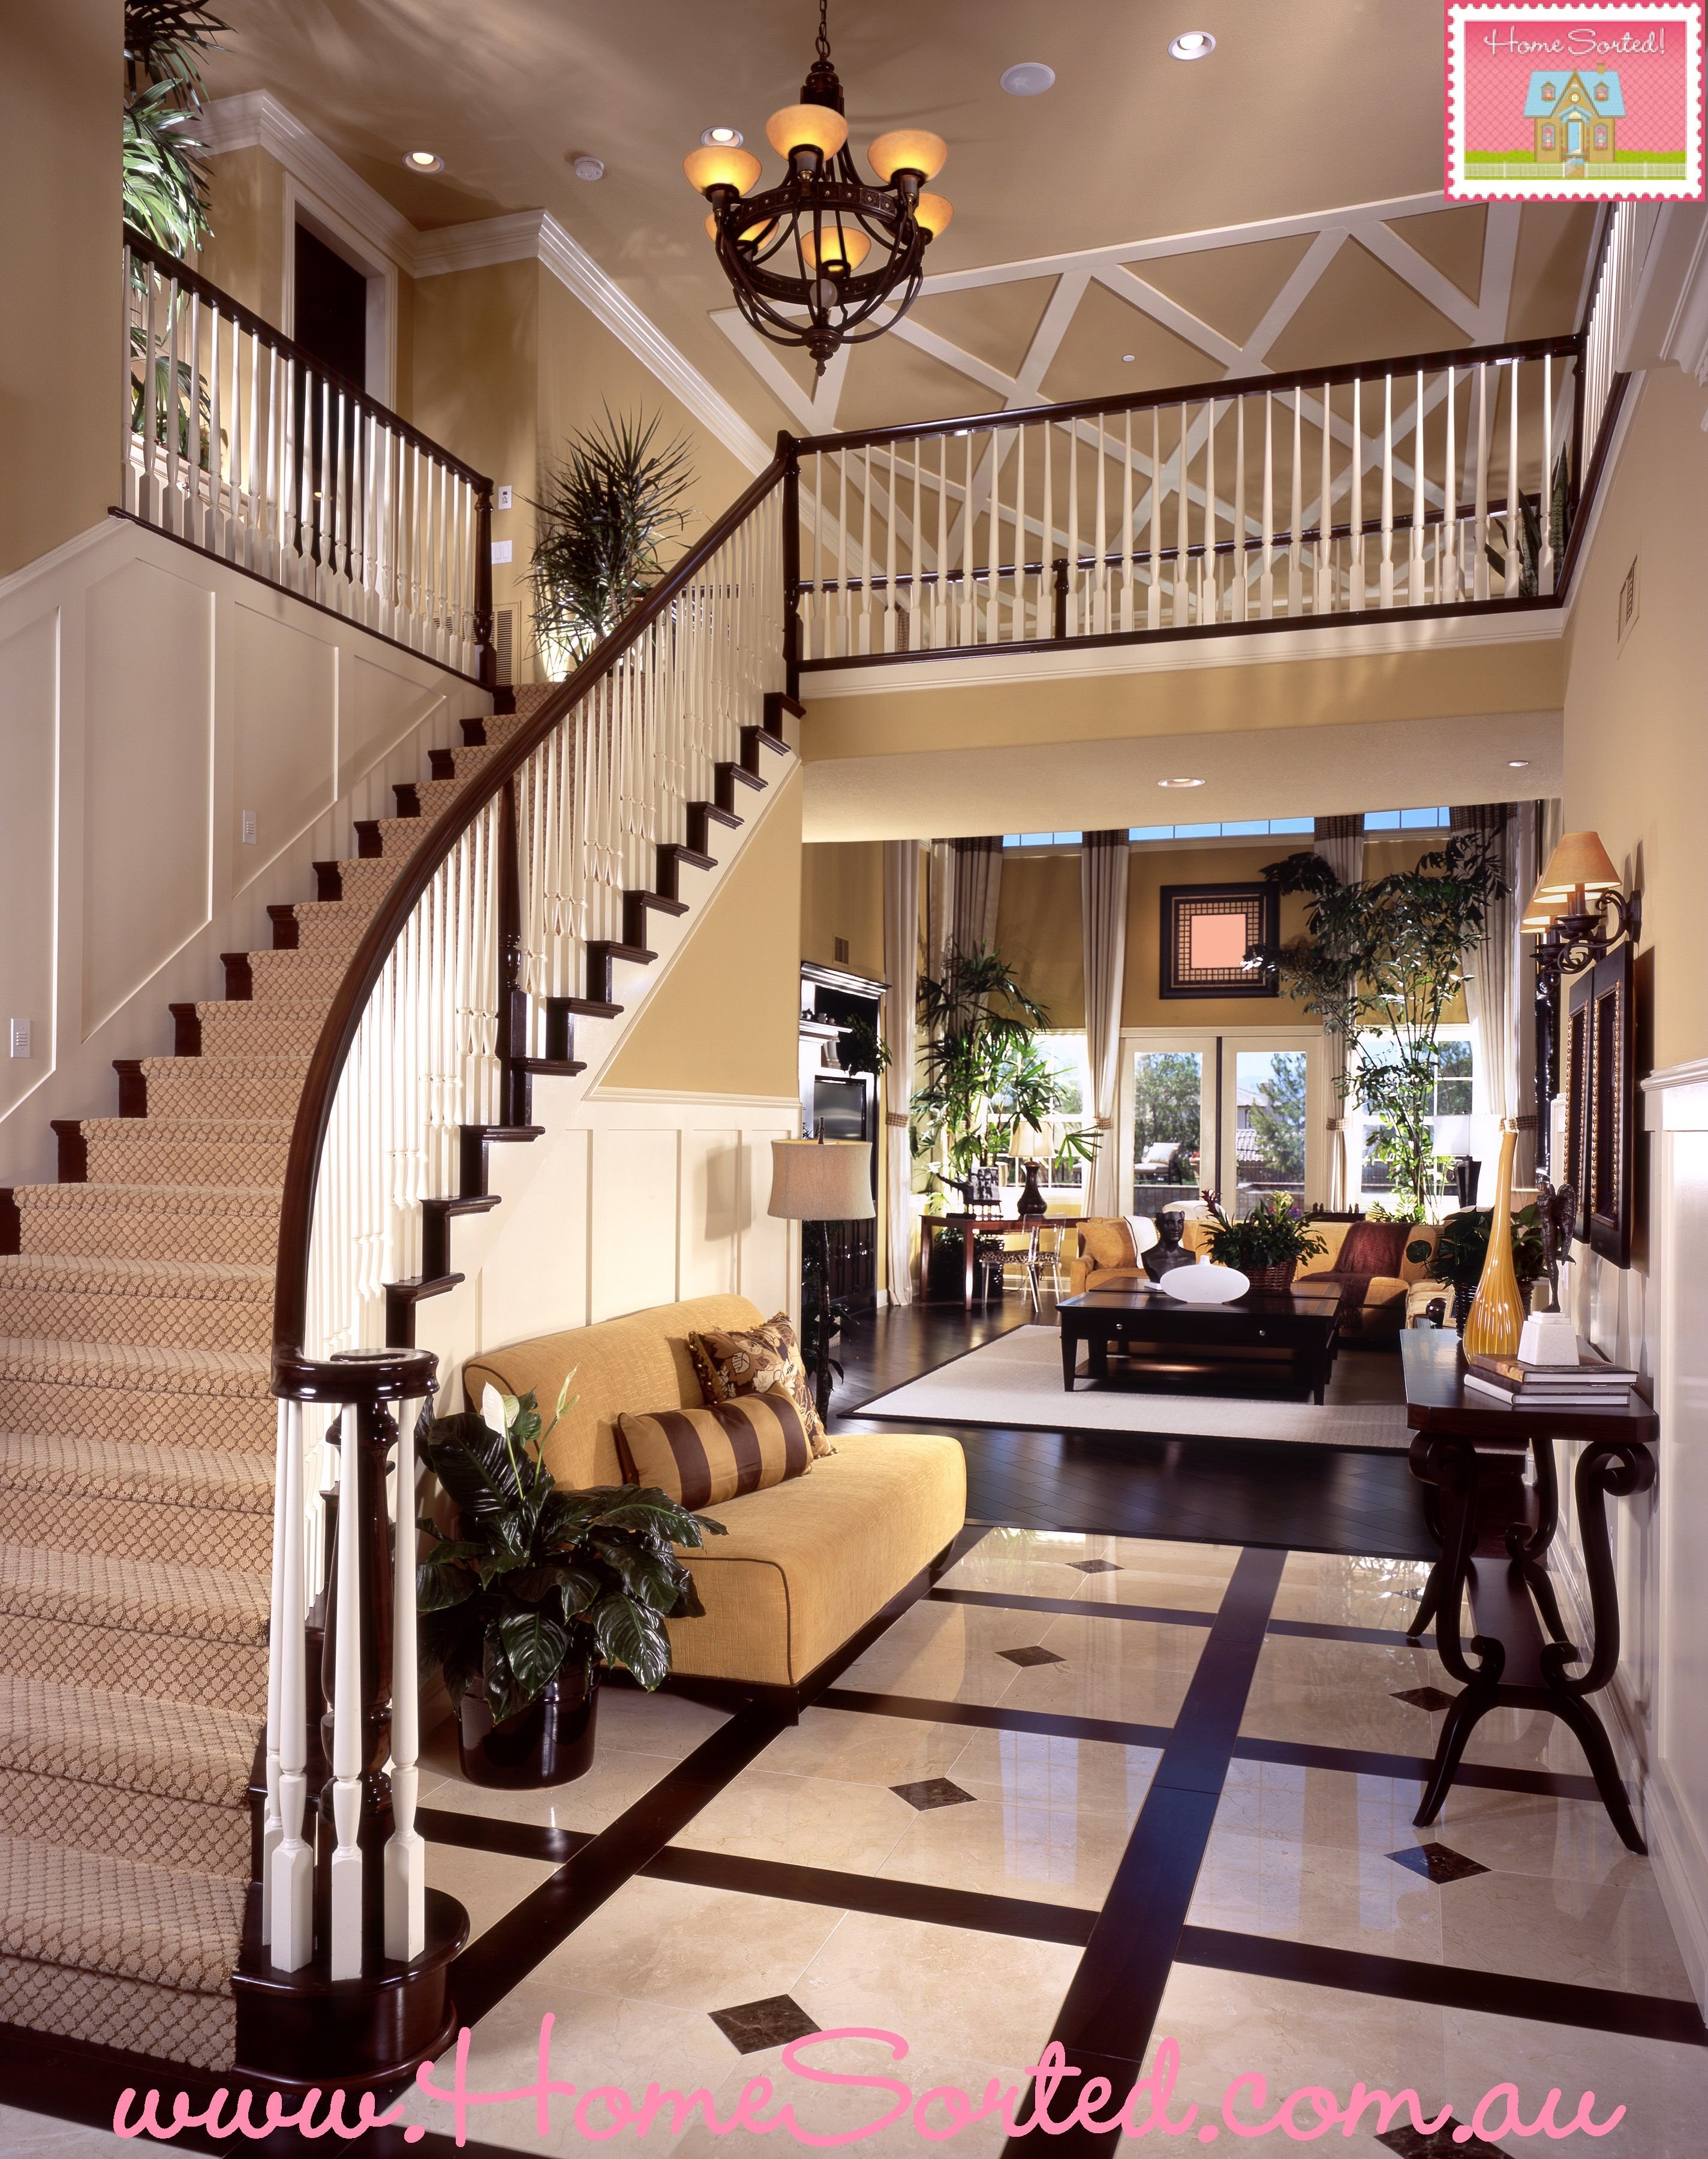 Виды дизайна дома. Гостиная с лестницей. Лестница в интерьере. Красивые интерьеры домов. Красивые гостиные с лестницей.